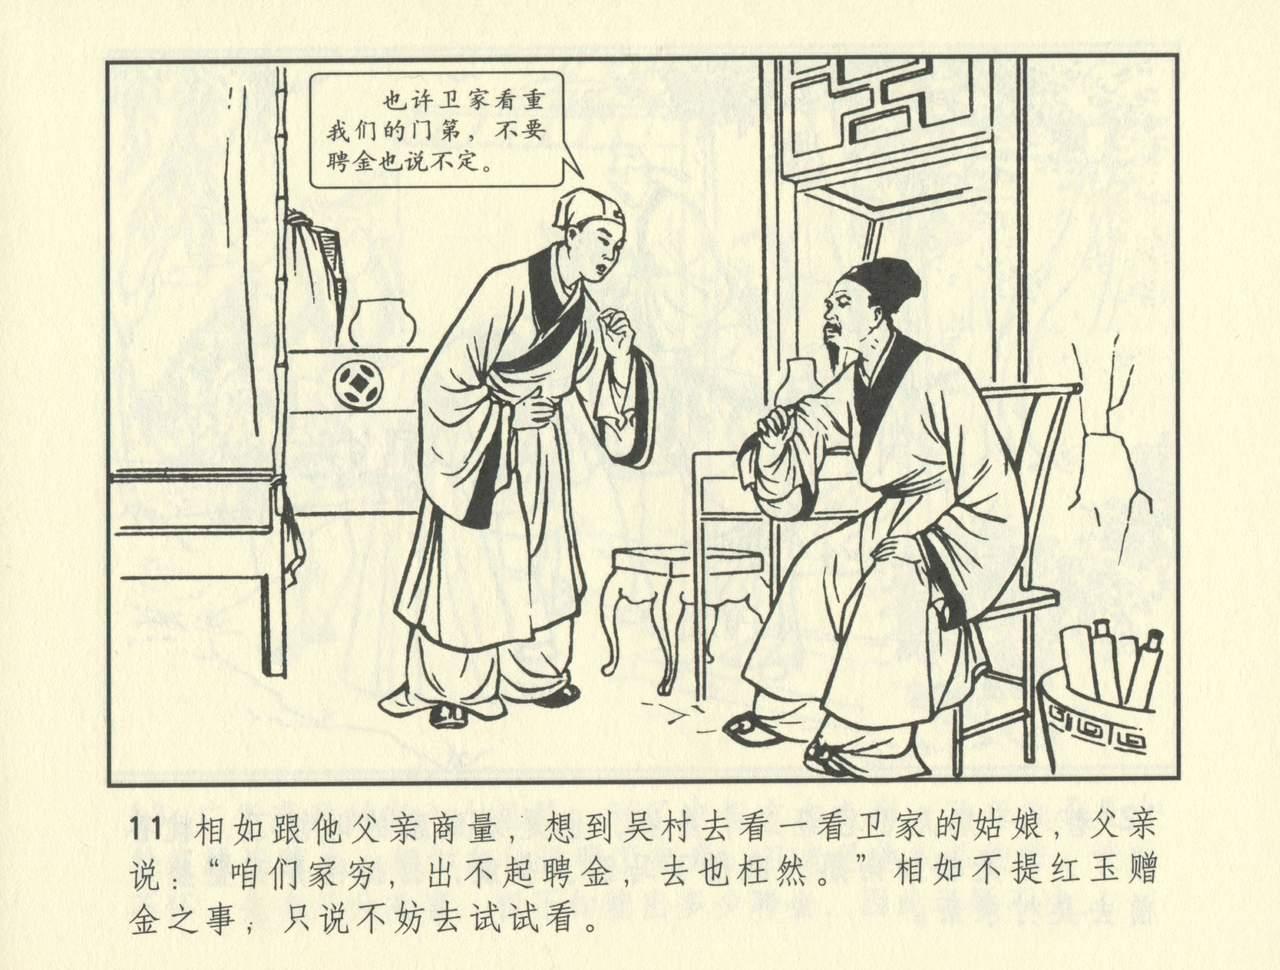 聊斋志异 张玮等绘 天津人民美术出版社 卷二十一 ~ 三十 351